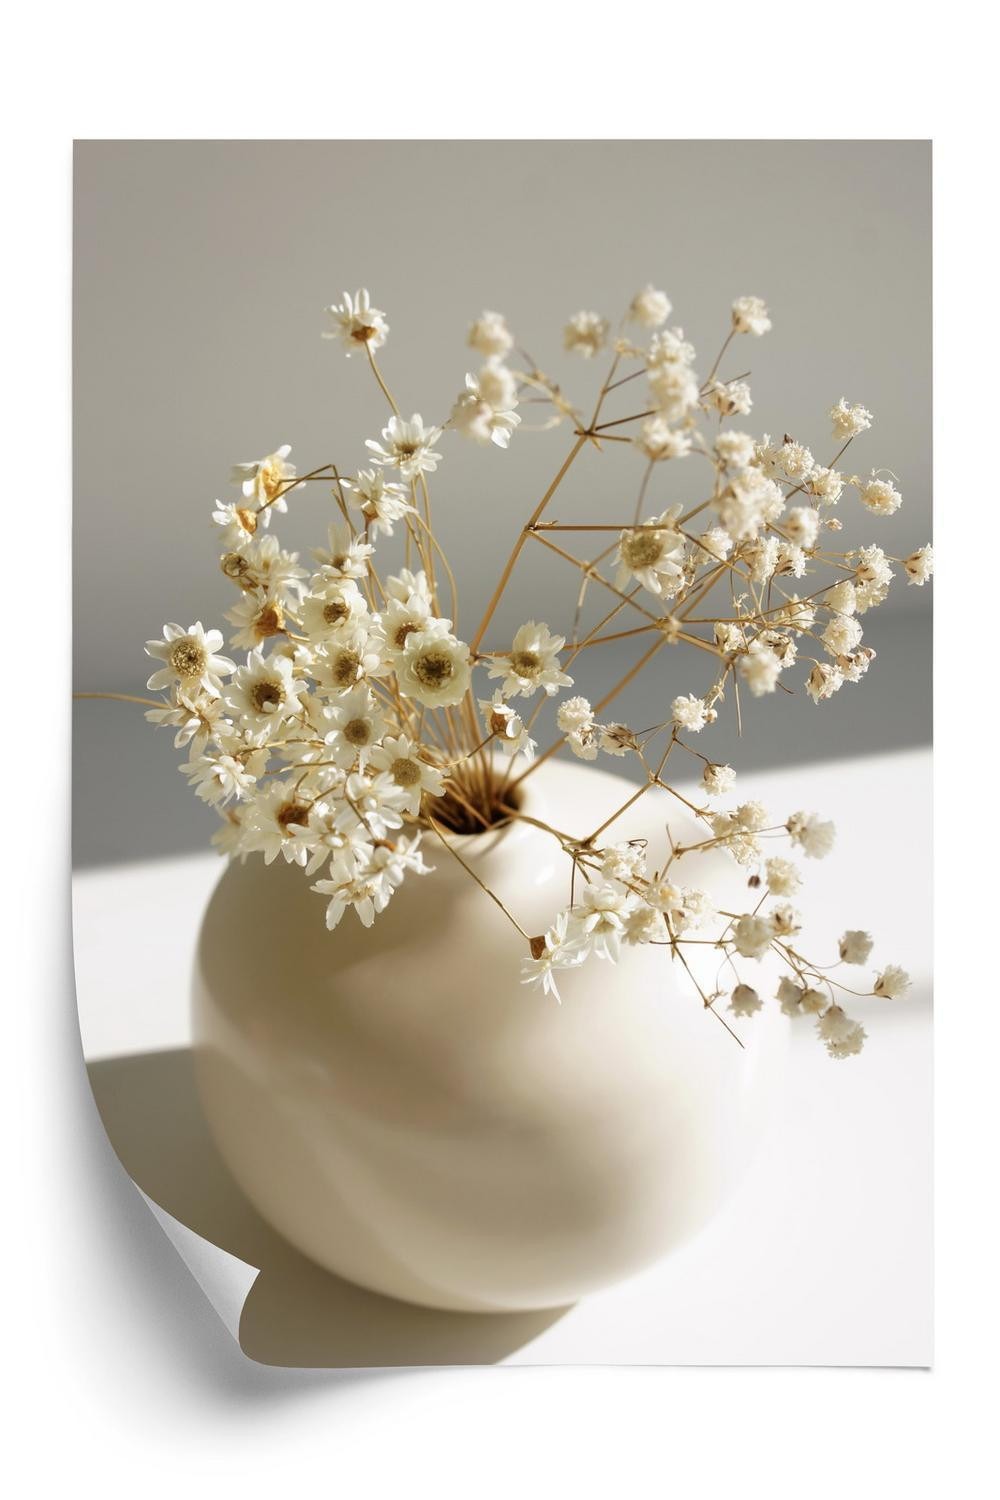 Plakat - En vase med tørre tusindfryd blomster